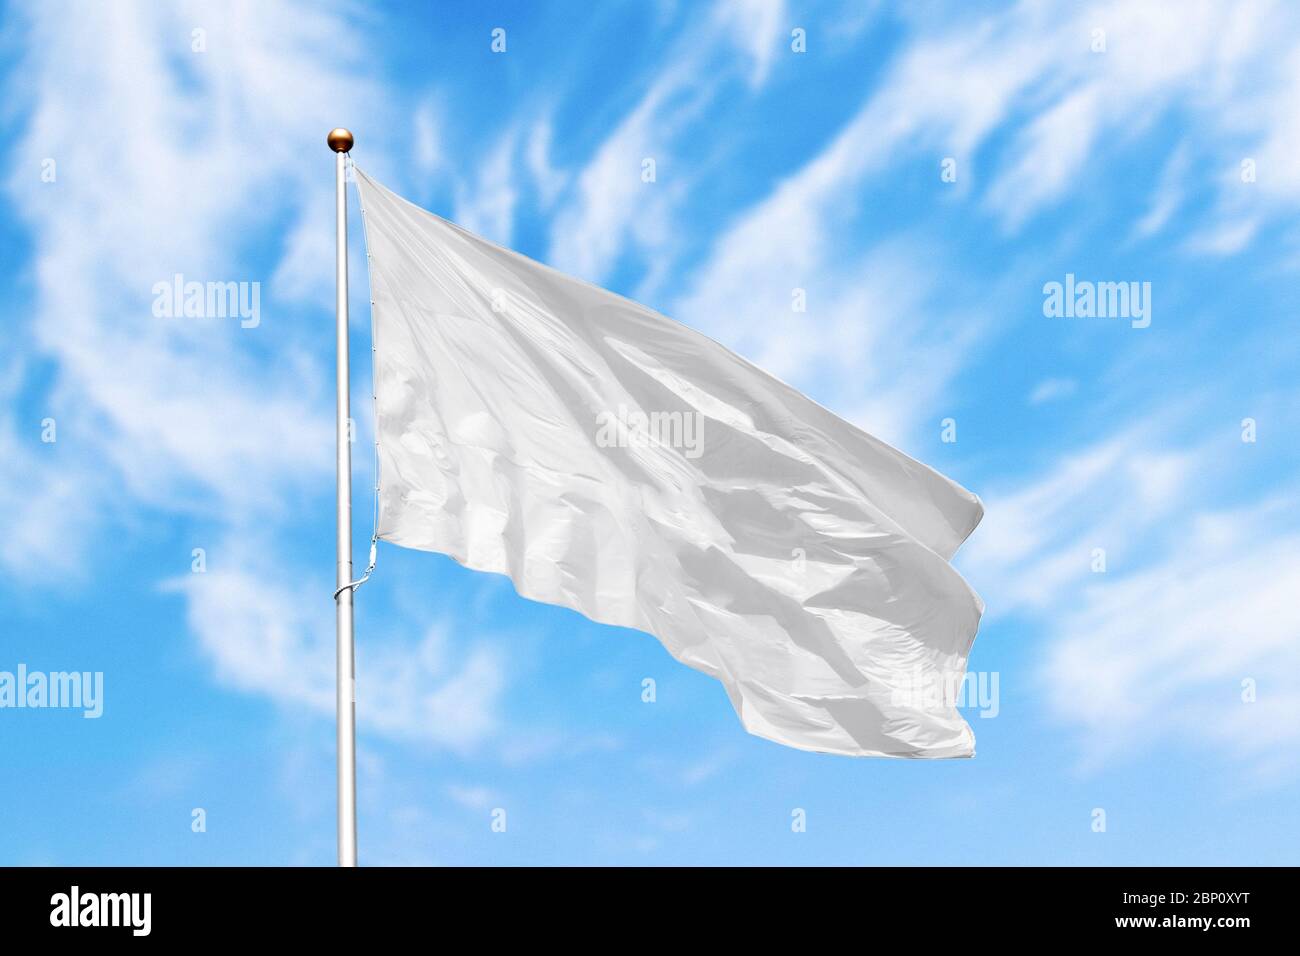 Drapeau blanc blanc sur le poteau agitant dans le vent dans le fond du ciel nuageux. Image d'extérieur colorée avec maquette de drapeau vide Banque D'Images